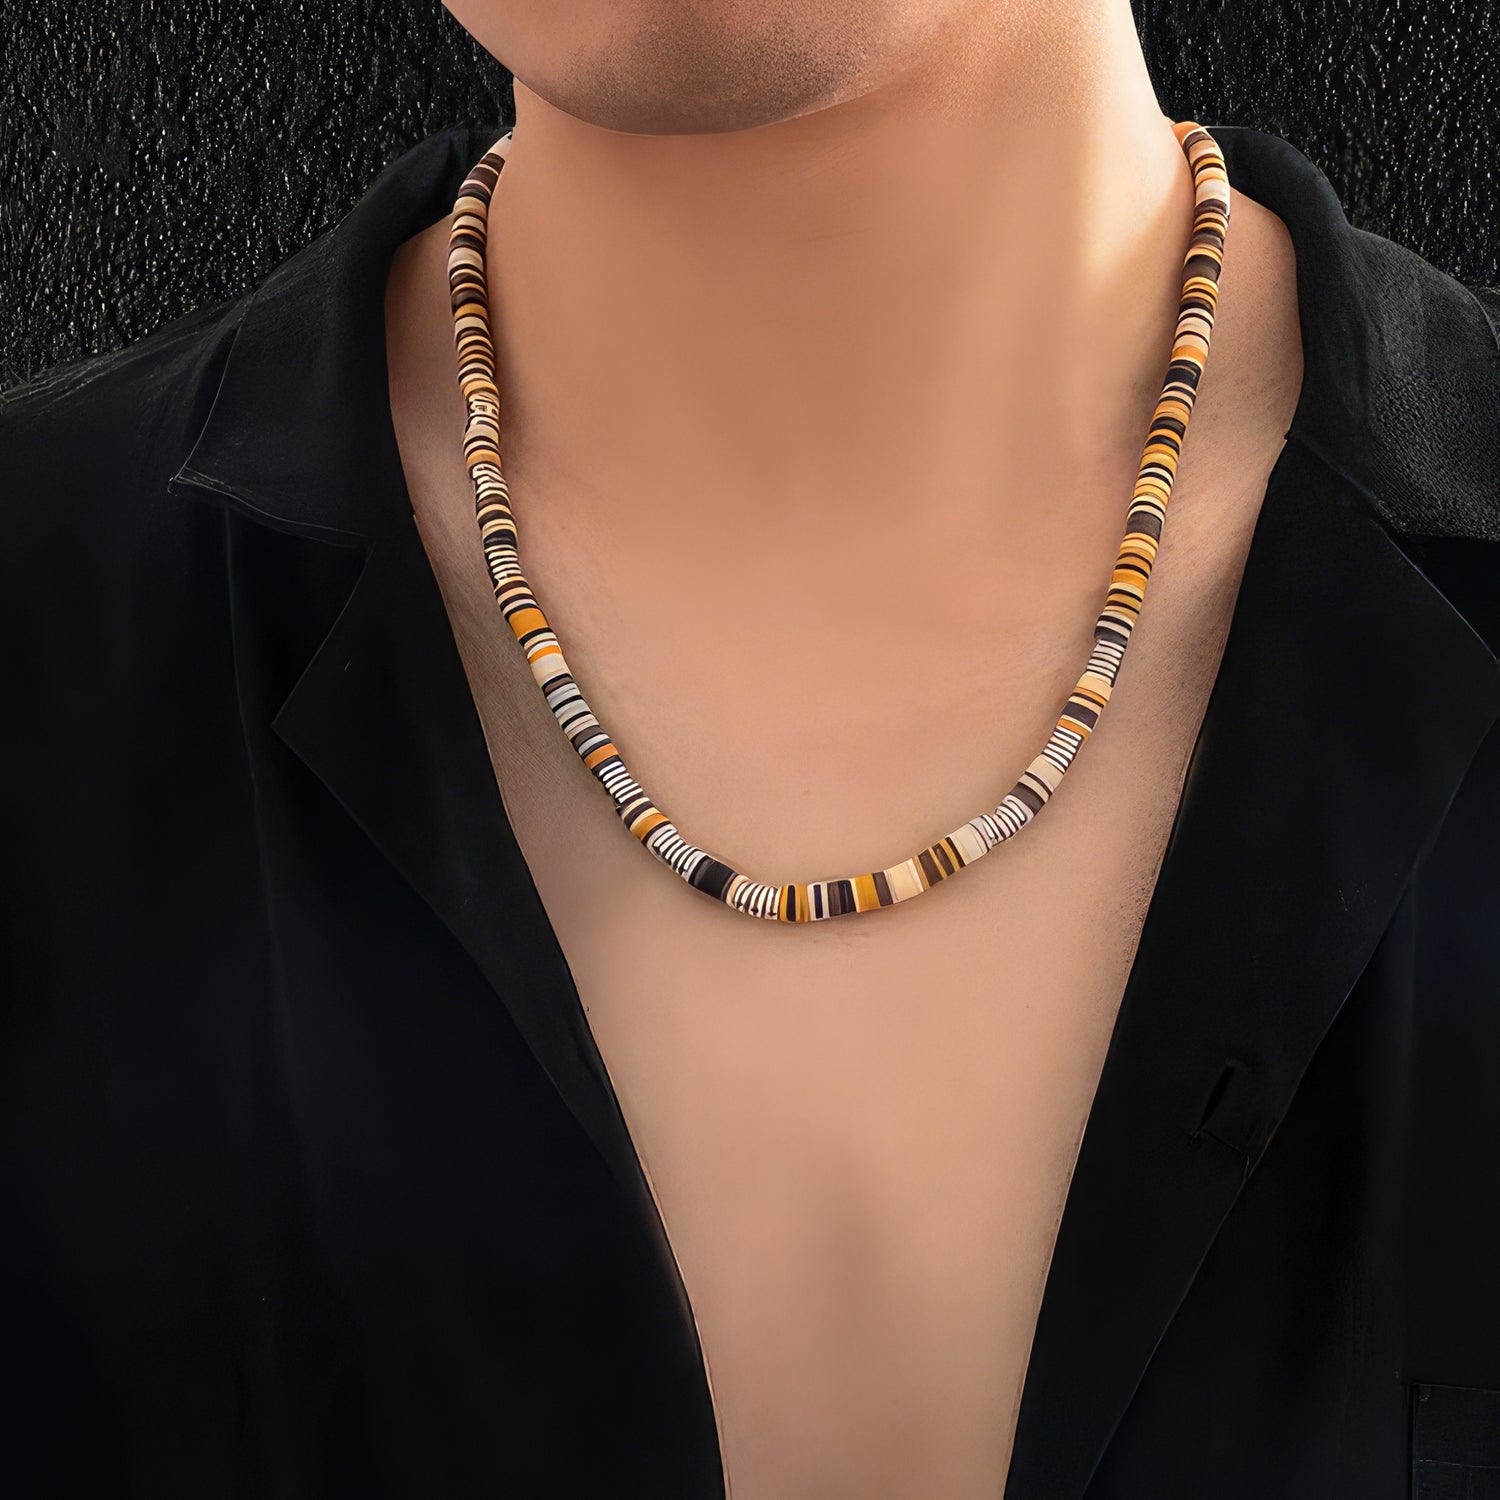 Men's Beaded Necklace - Men's Necklace - Men's Choker Necklace - Men's